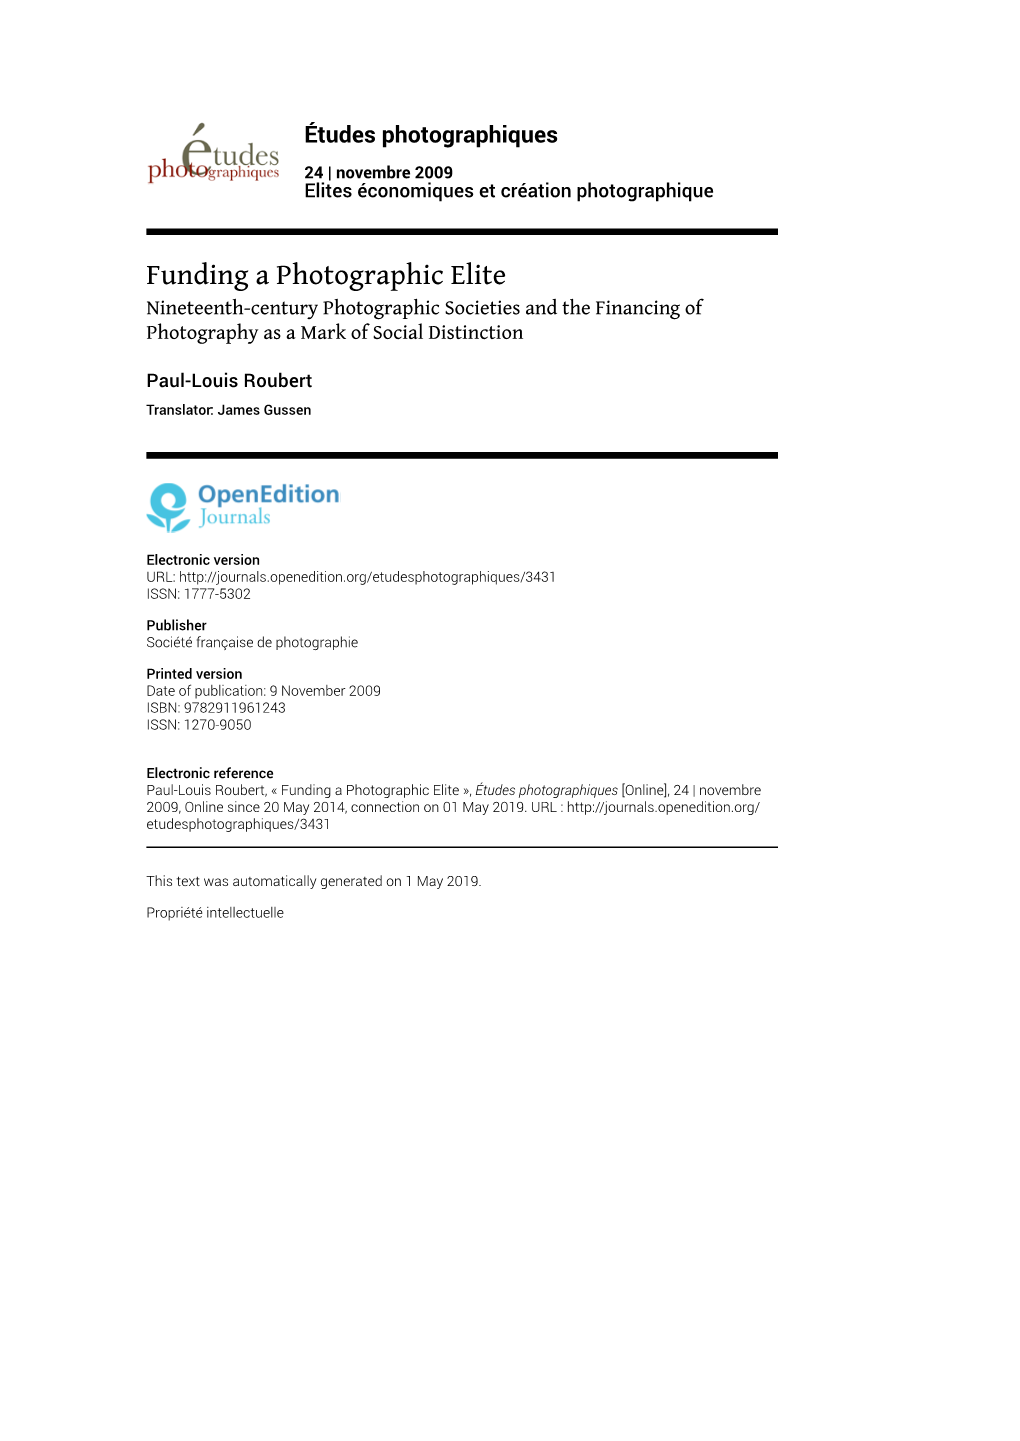 Études Photographiques, 24 | 2009 Funding a Photographic Elite 2